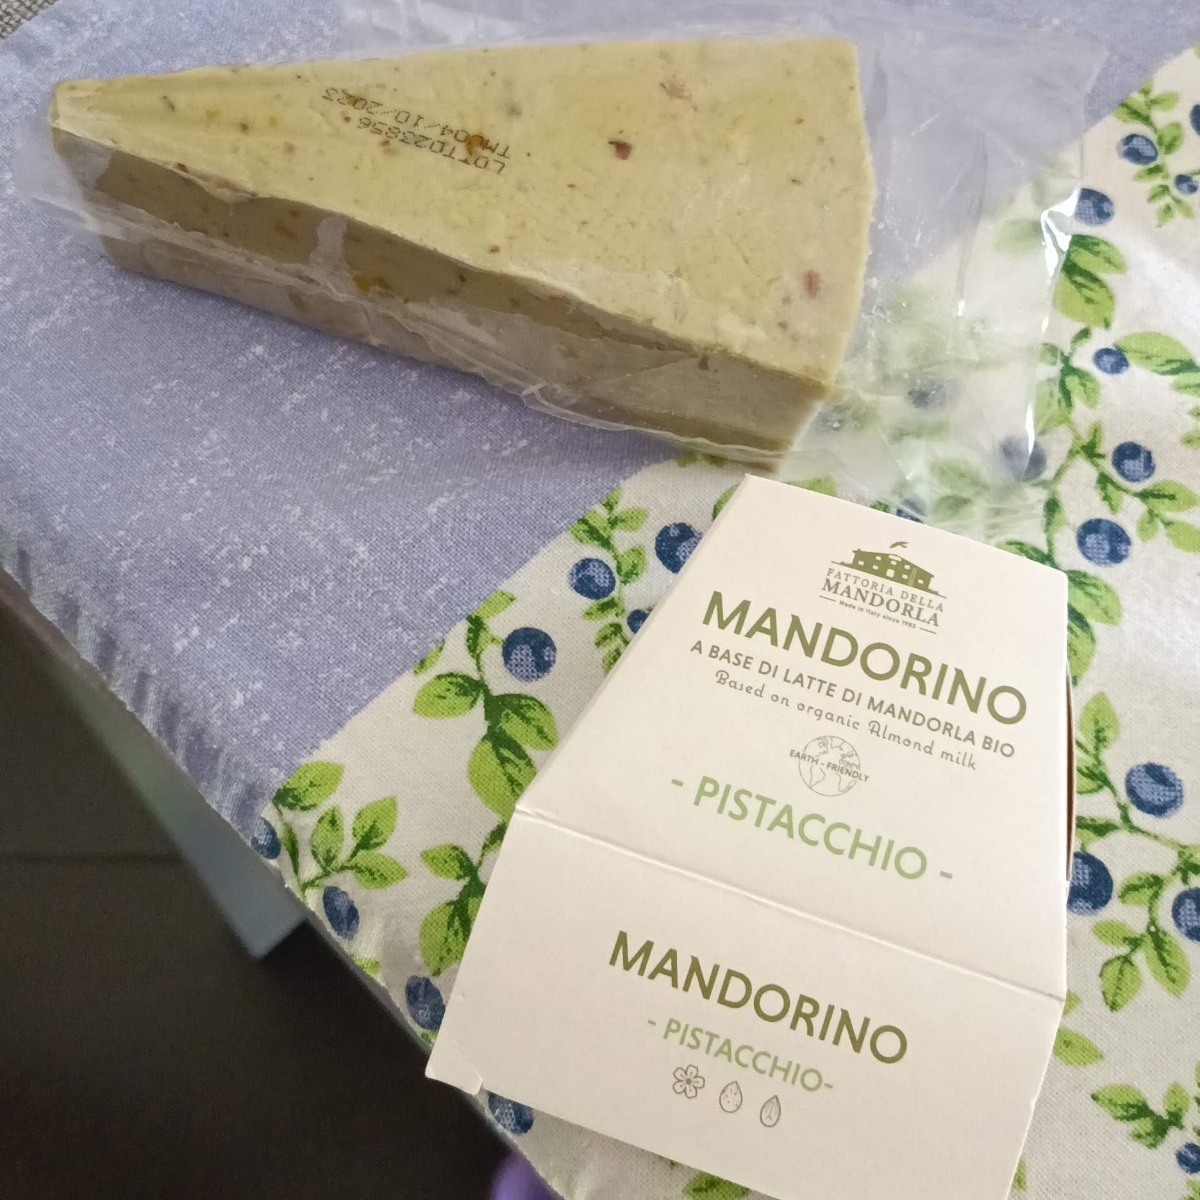 La fattoria della mandorla mandorino al pistacchio Review | abillion